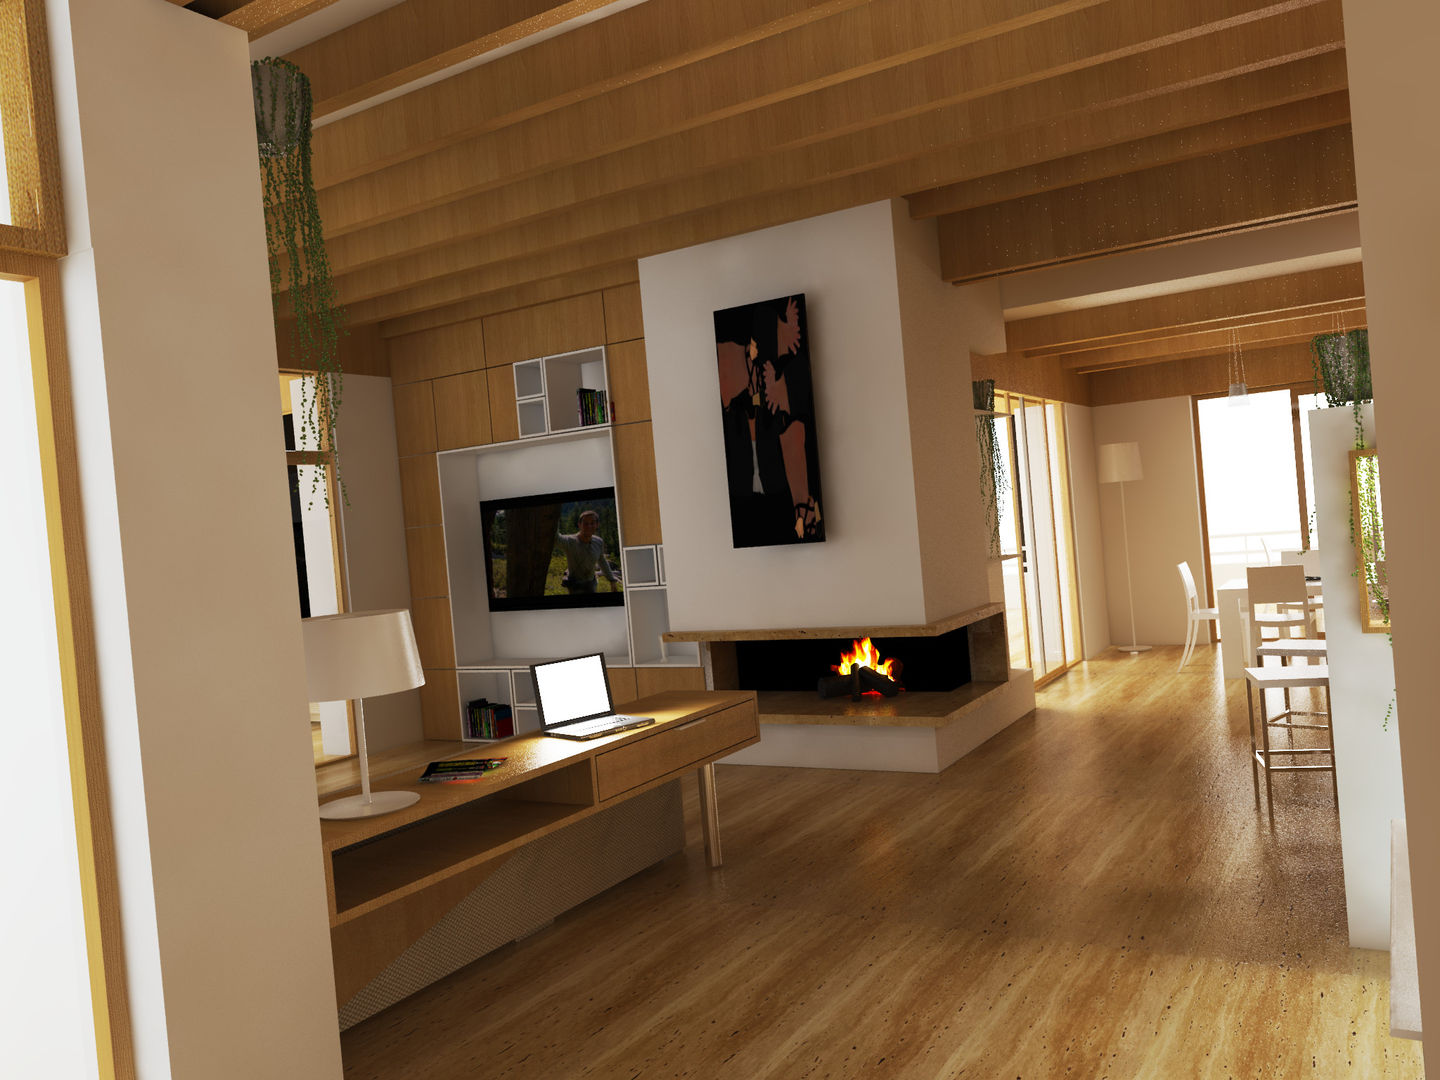 RENDER SOGGIORNO Ing. Massimiliano Lusetti Soggiorno moderno pavimento in legno,soffitto in legno,focolare,tavolo da pranzo